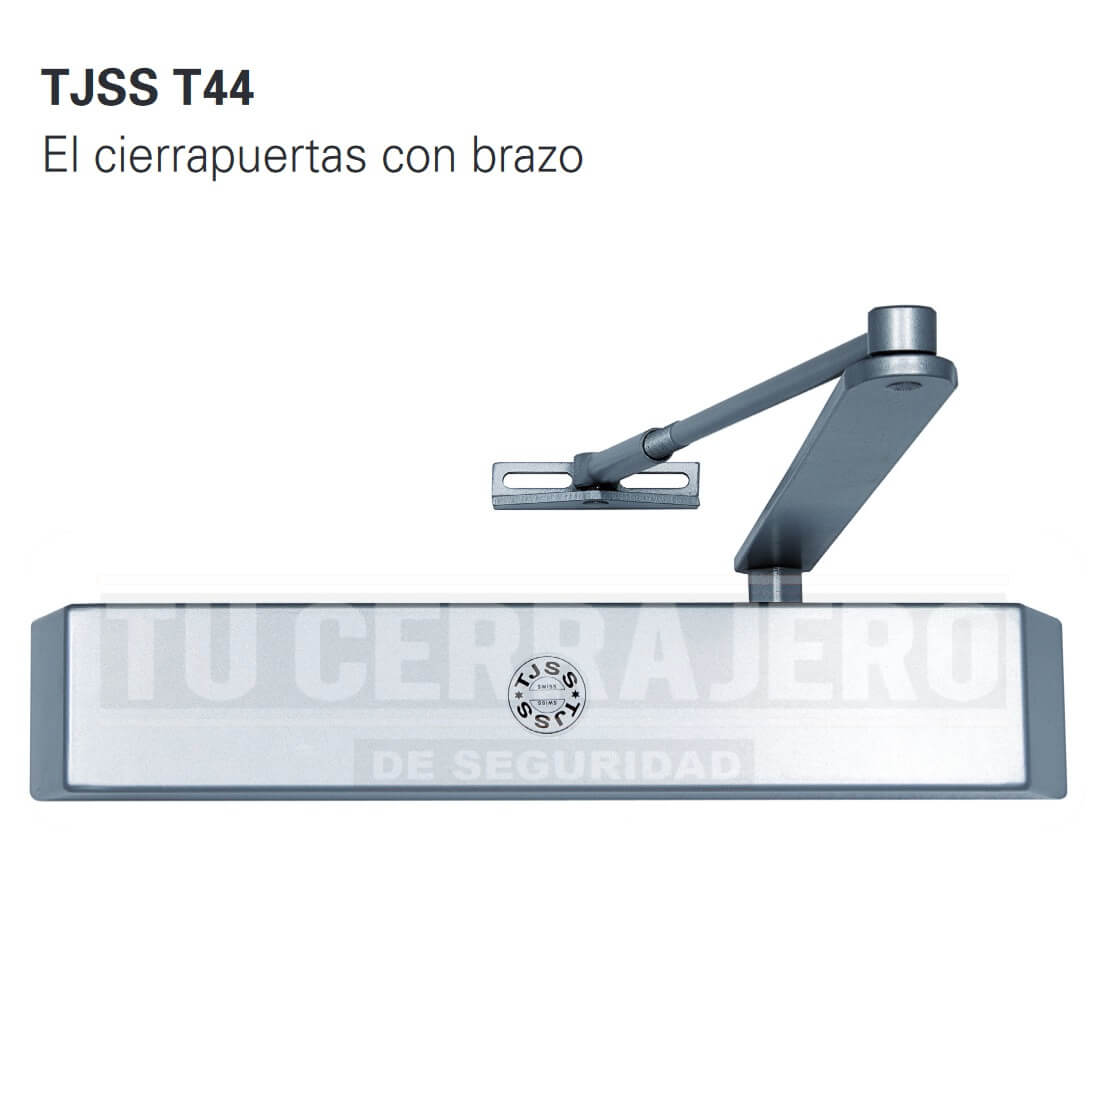 TJSS T44